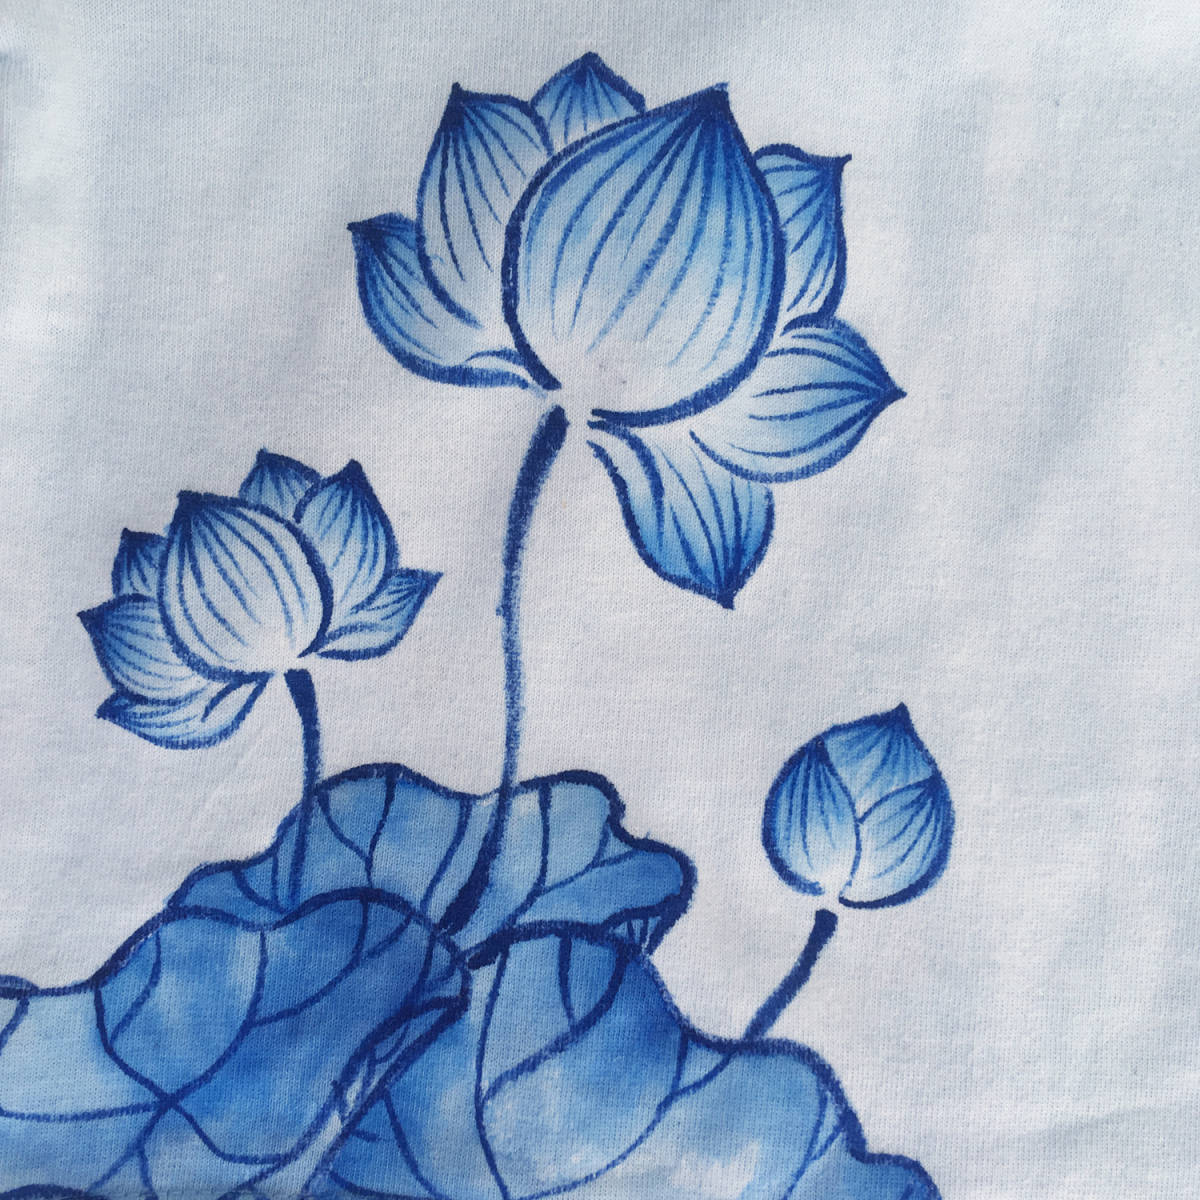 キッズ Tシャツ 110サイズ ブルー 蓮柄Tシャツ 手描きで描いた蓮の花柄Tシャツ 半袖 和柄 和風 レトロ ハンドメイド